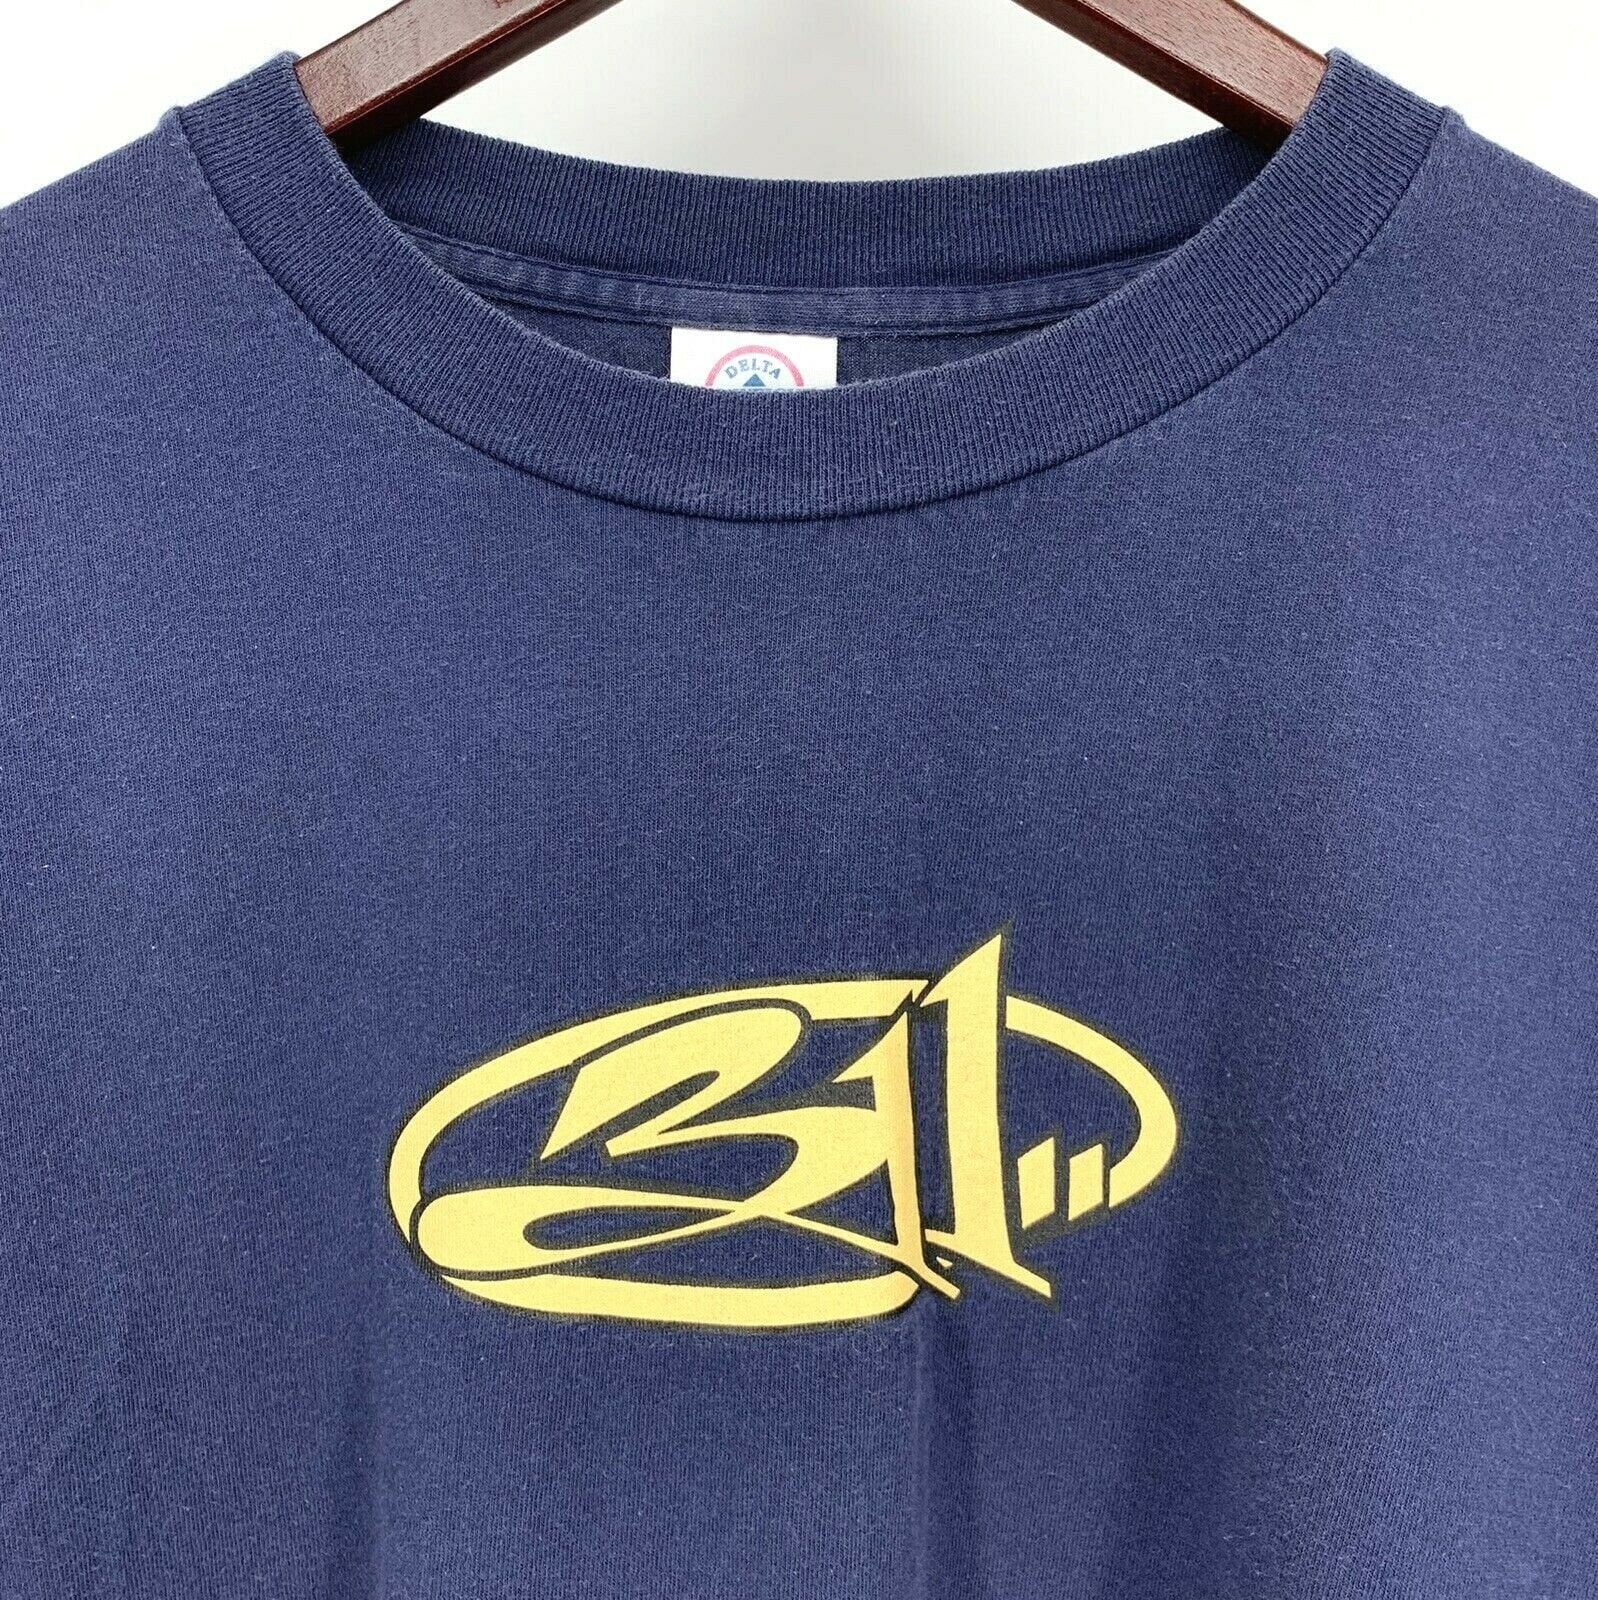 Vintage 311 Band T Shirt XL Long Sleeve Double Sided Blue Crew - Etsy UK